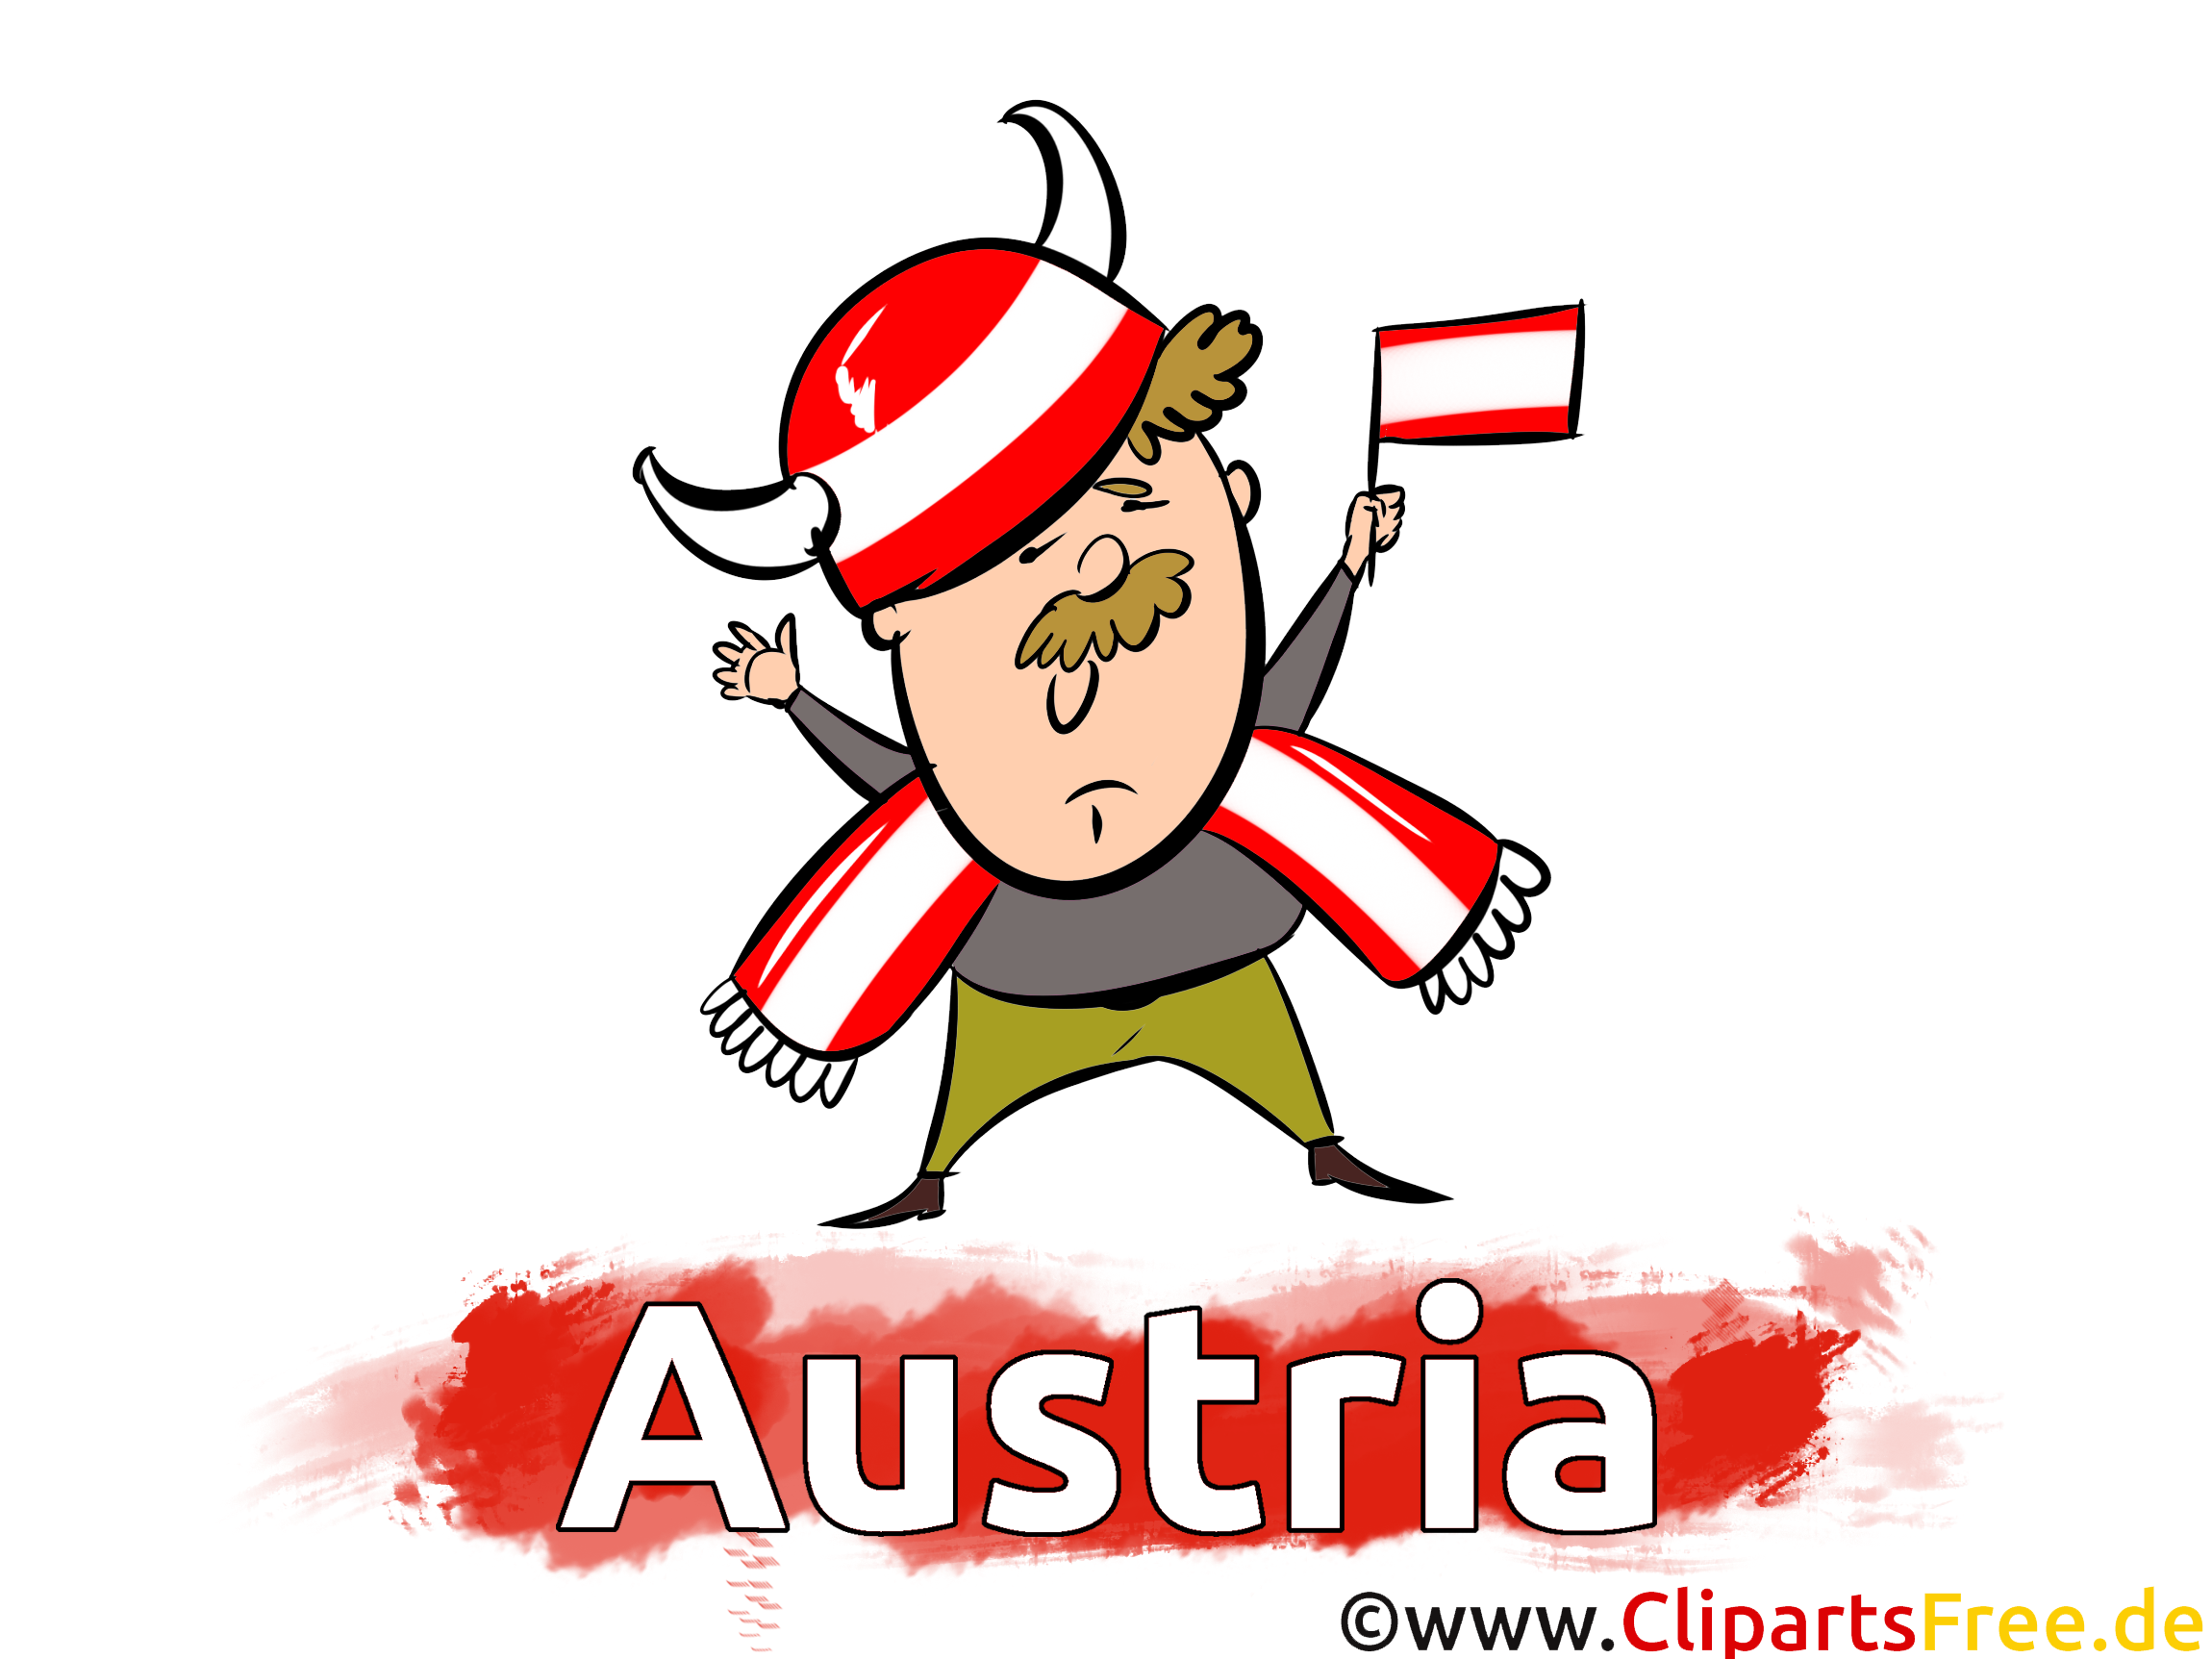 Télécharger Autriche pour gratuit Images Soccer